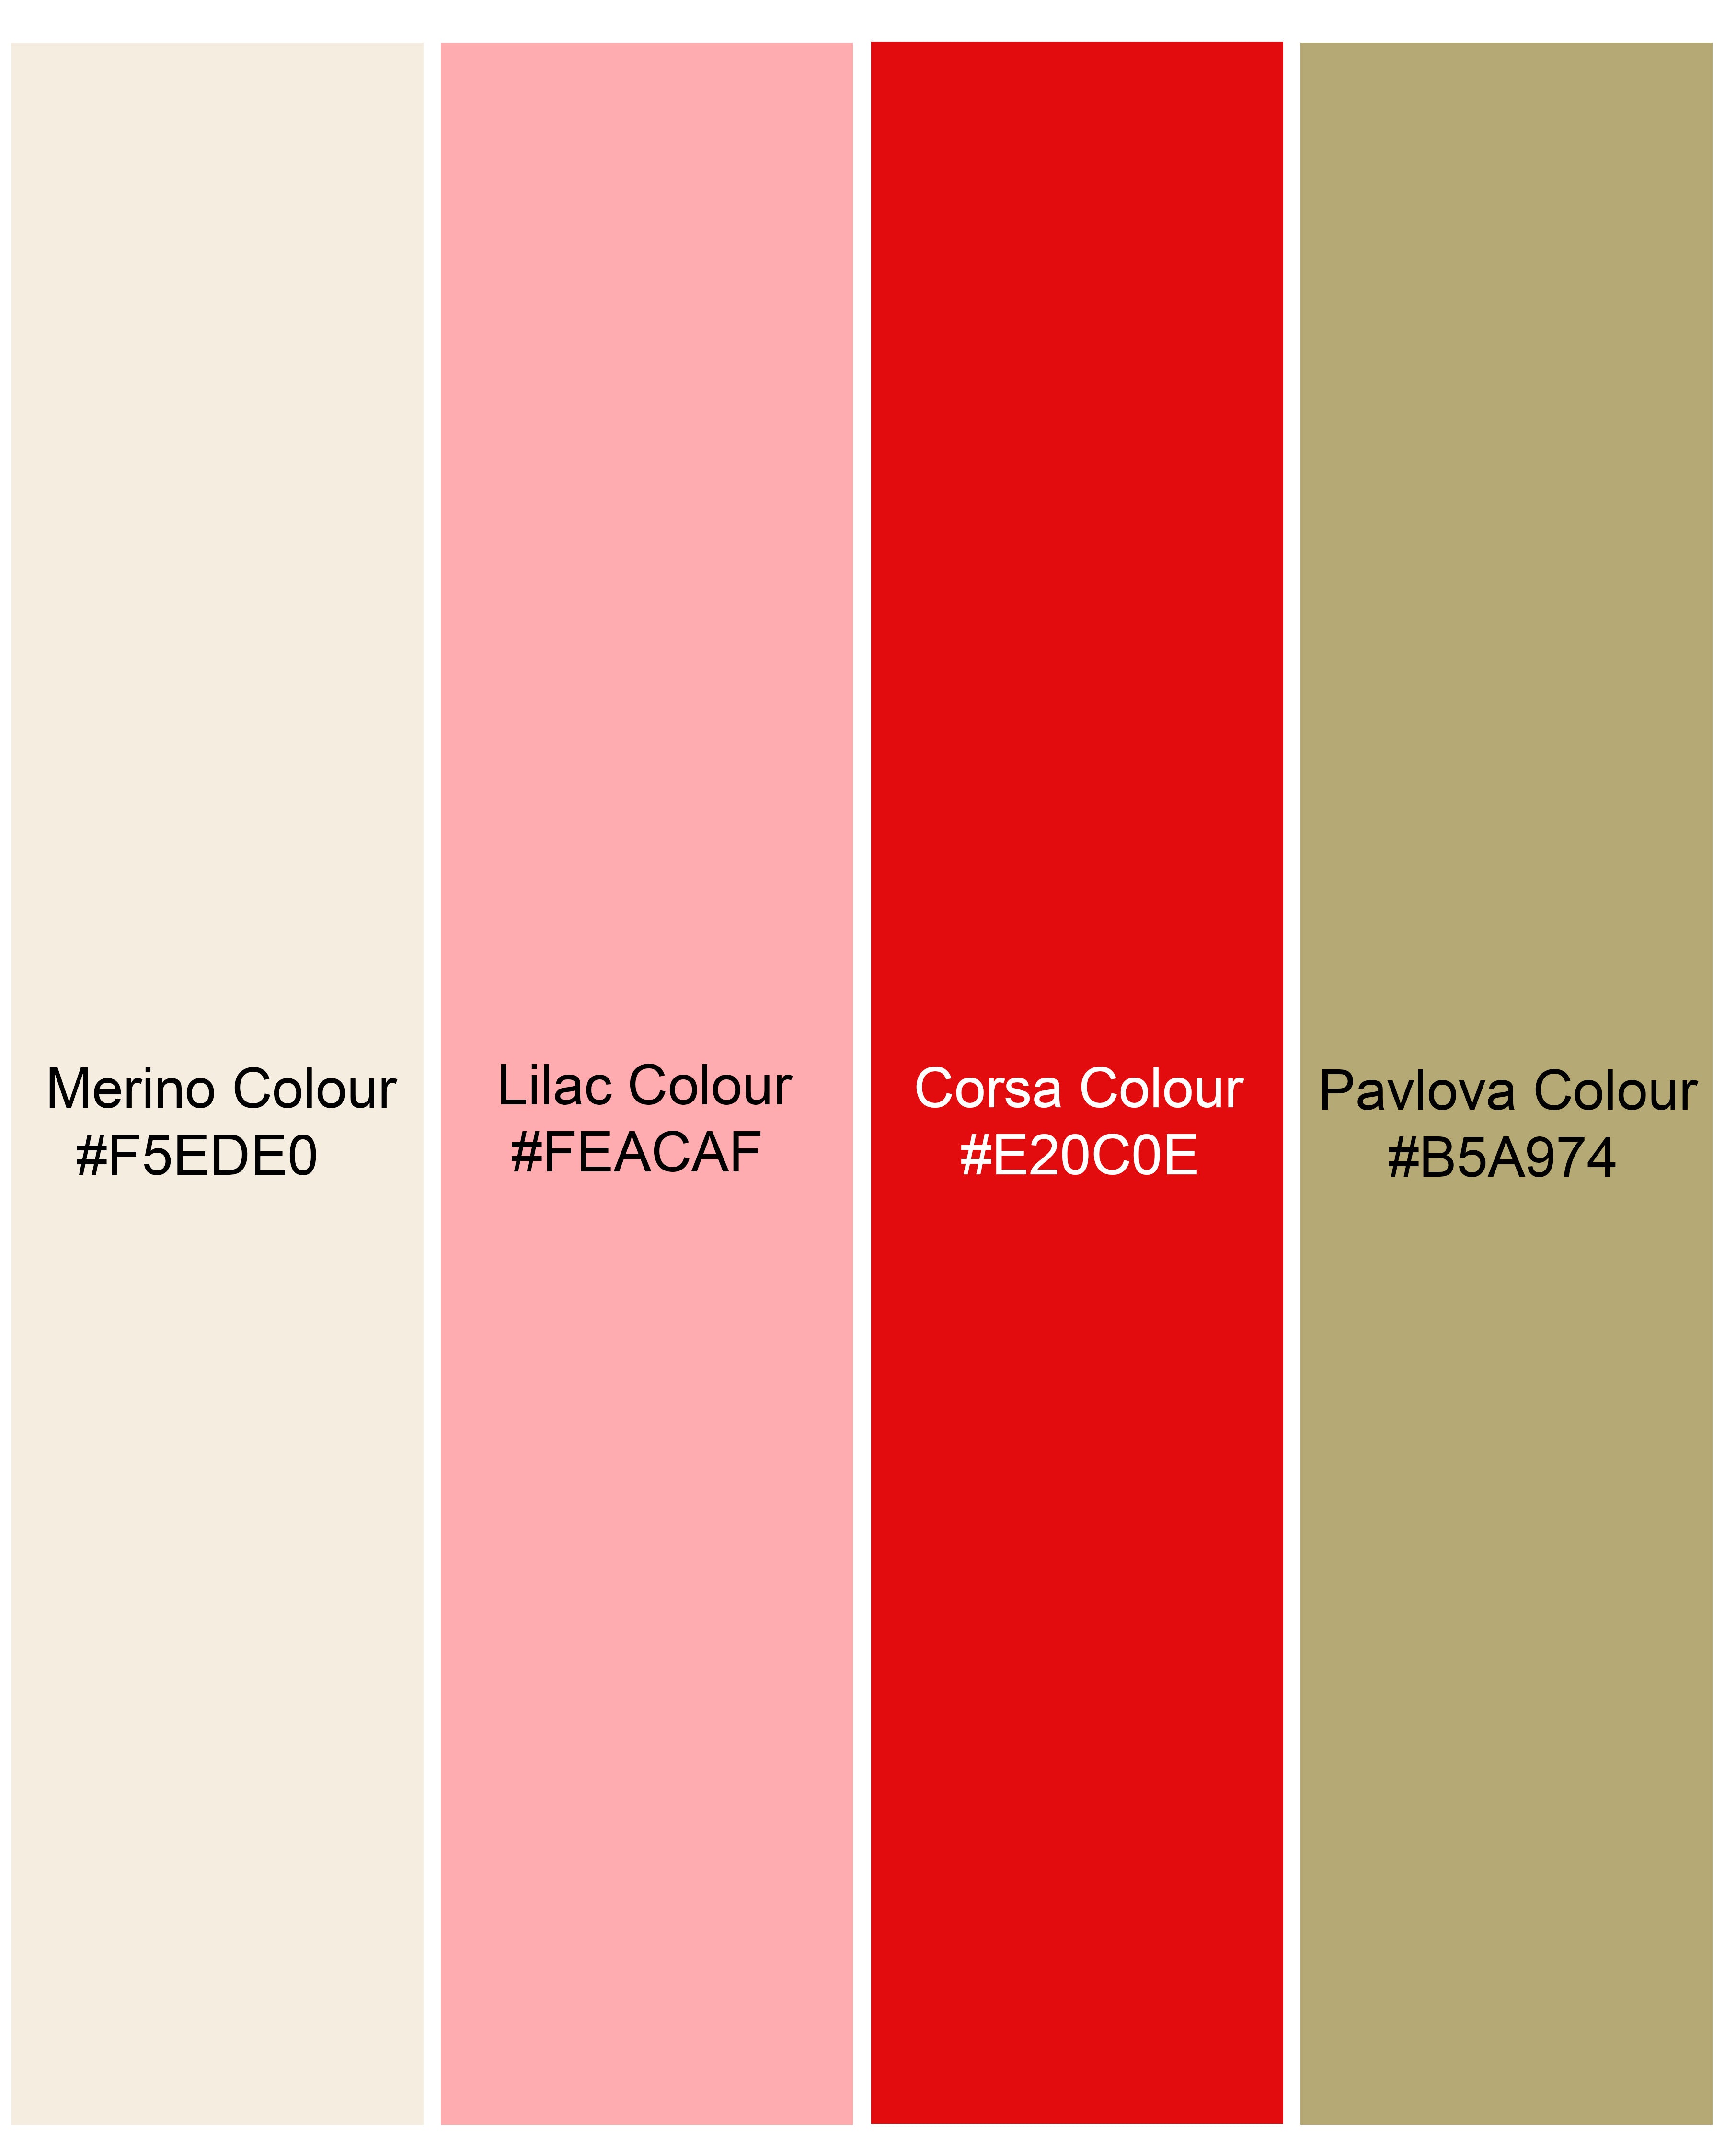 Merino Cream Floral Printed Premium Cotton Shorts SR198-28, SR198-30, SR198-32, SR198-34, SR198-36, SR198-38, SR198-40, SR198-42, SR198-44